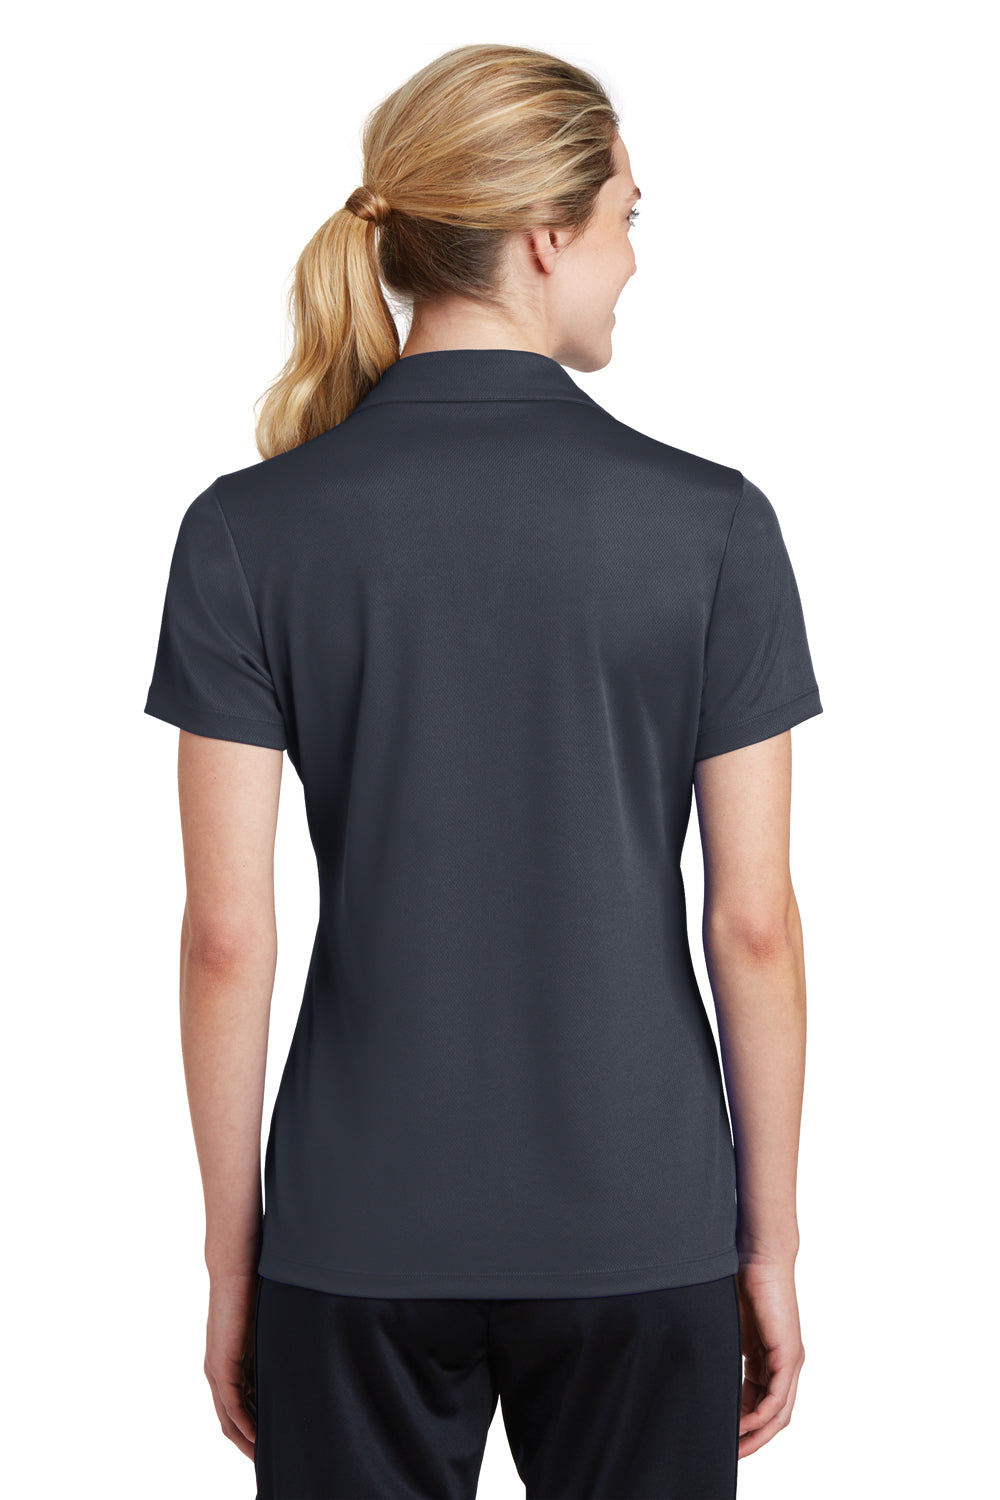 Sport-Tek LST640 Womens RacerMesh Moisture Wicking Short Sleeve Polo Shirt Graphite Grey Back